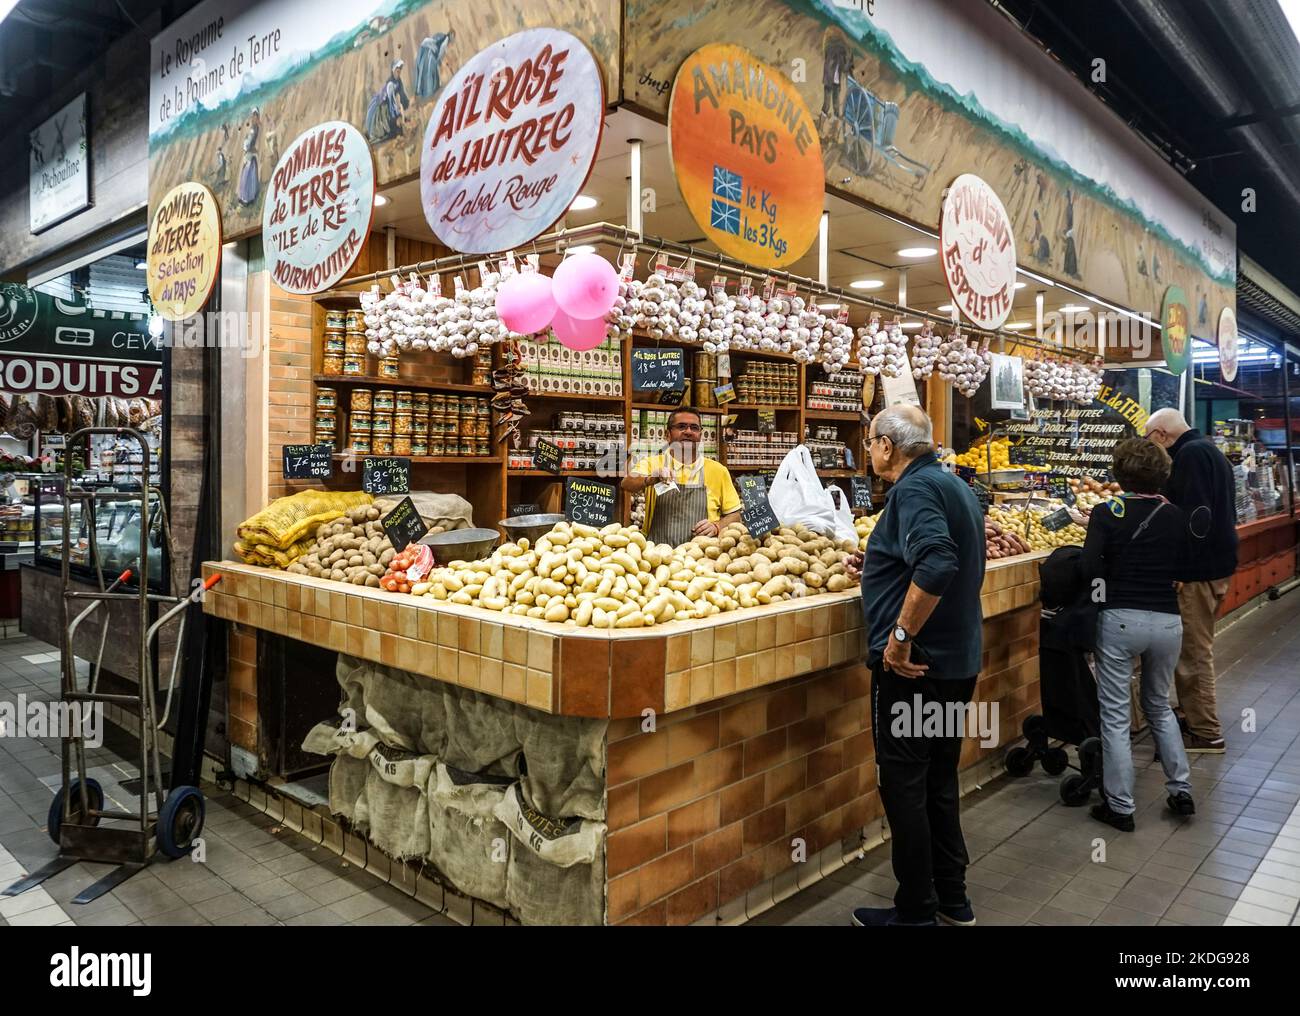 Uno stand mercato specializzato in una varietà di patate a Les Halles. De Nímes, Nimes, Francia, Un grande mercato al coperto con oltre 100 bancarelle. Foto Stock